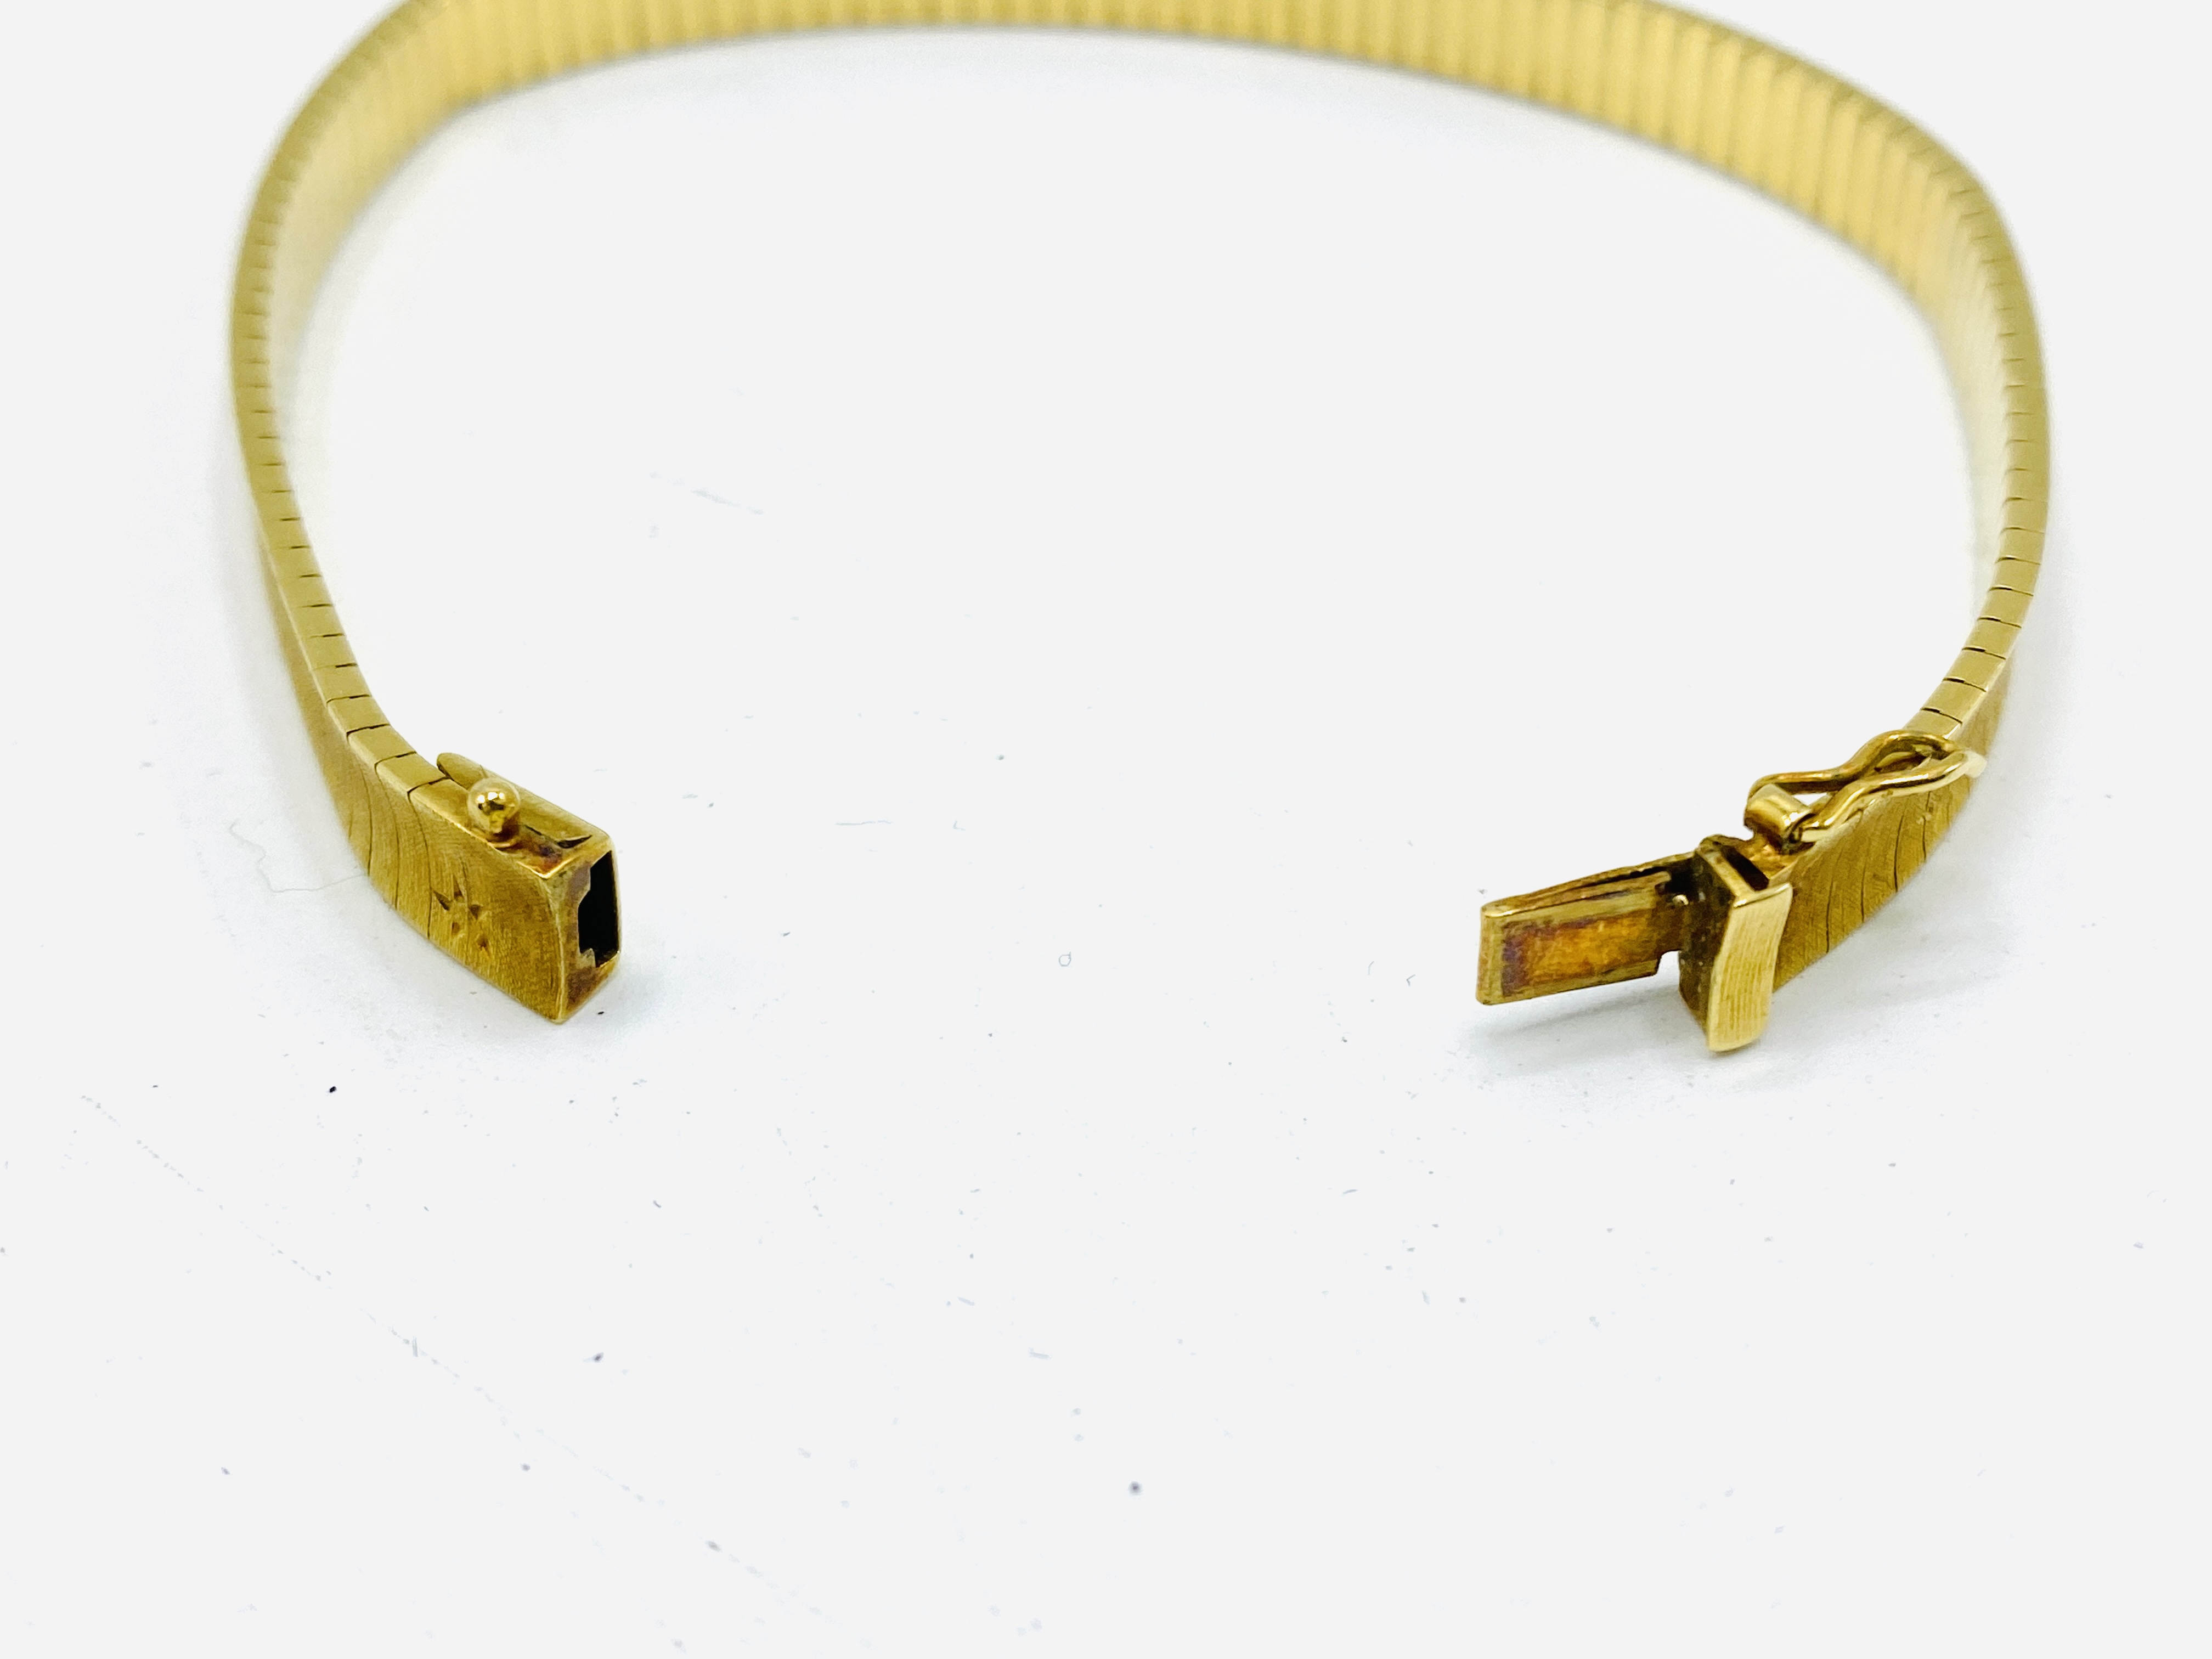 18ct gold bracelet - Image 5 of 5